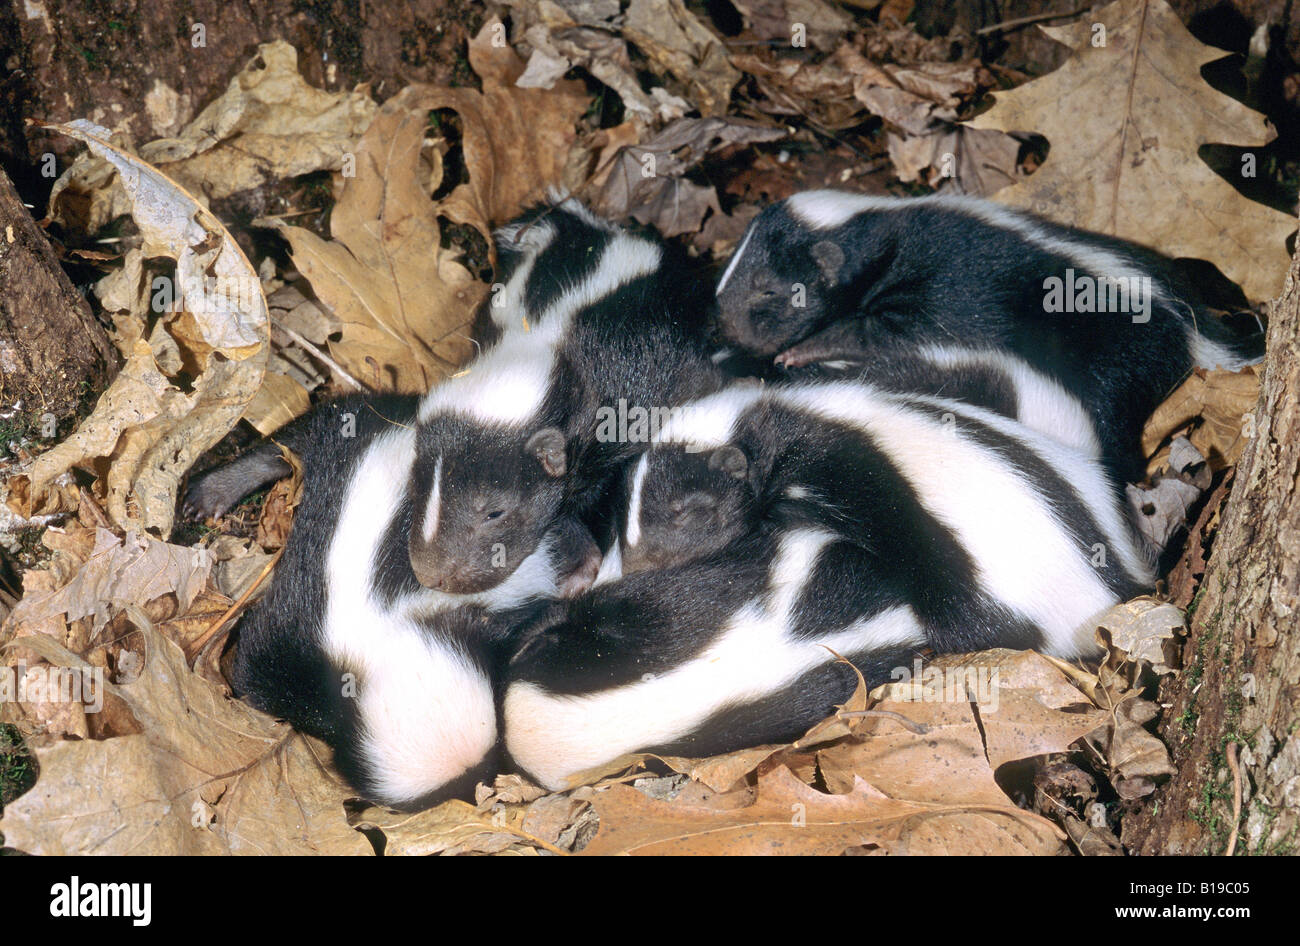 Litter of newborn striped skunks (Mephitis mephitis) in the family natal nest, Minnesota, USA. Stock Photo